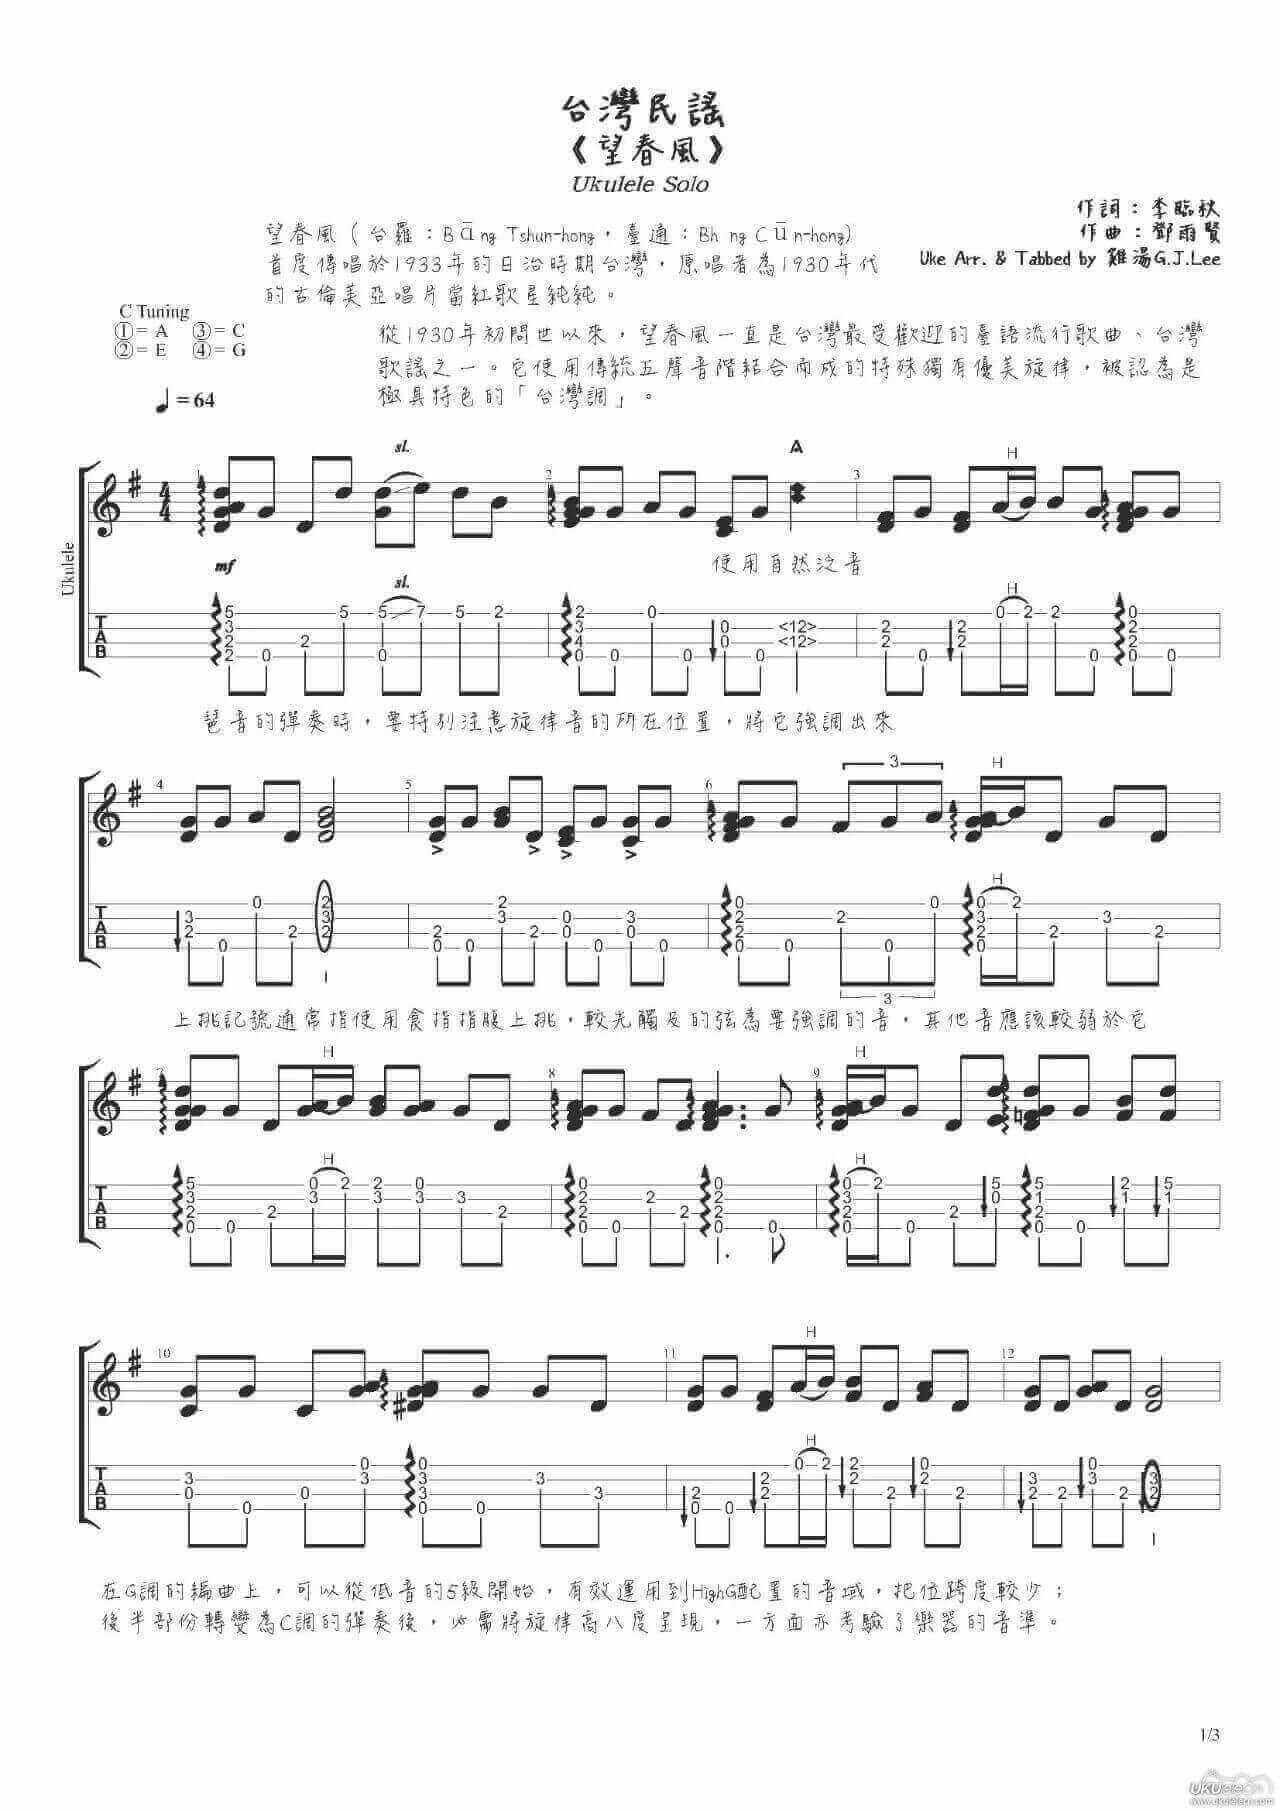 G.J Lee鸡汤老师改编的一首台湾地区的经典民谣《望春风》  ukulele指弹曲谱插图4